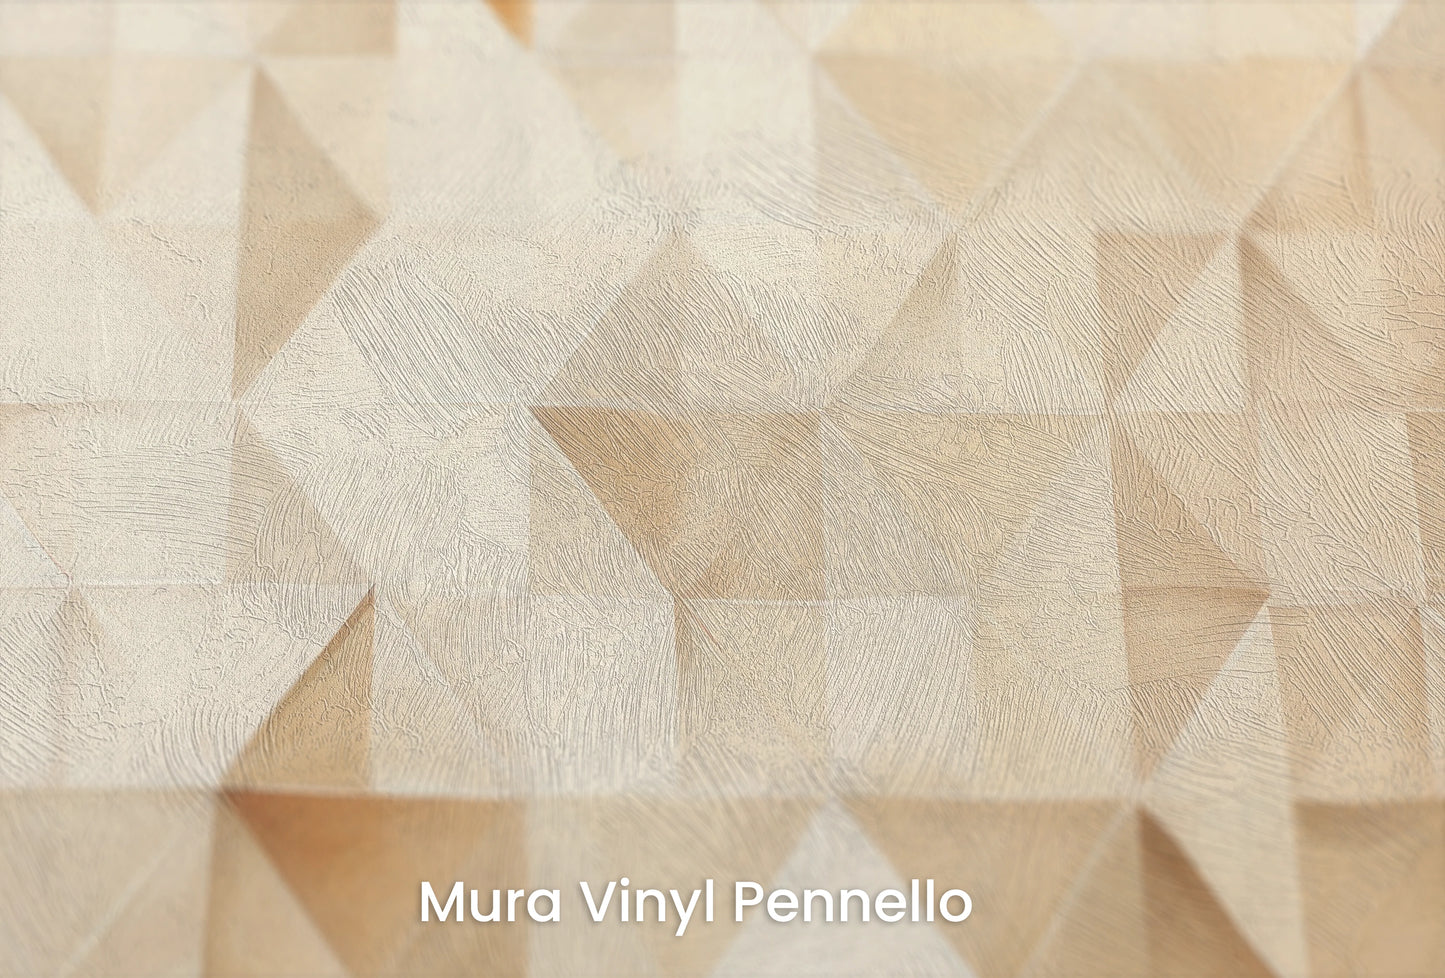 Zbliżenie na artystyczną fototapetę o nazwie Abstract Peaks na podłożu Mura Vinyl Pennello - faktura pociągnięć pędzla malarskiego.